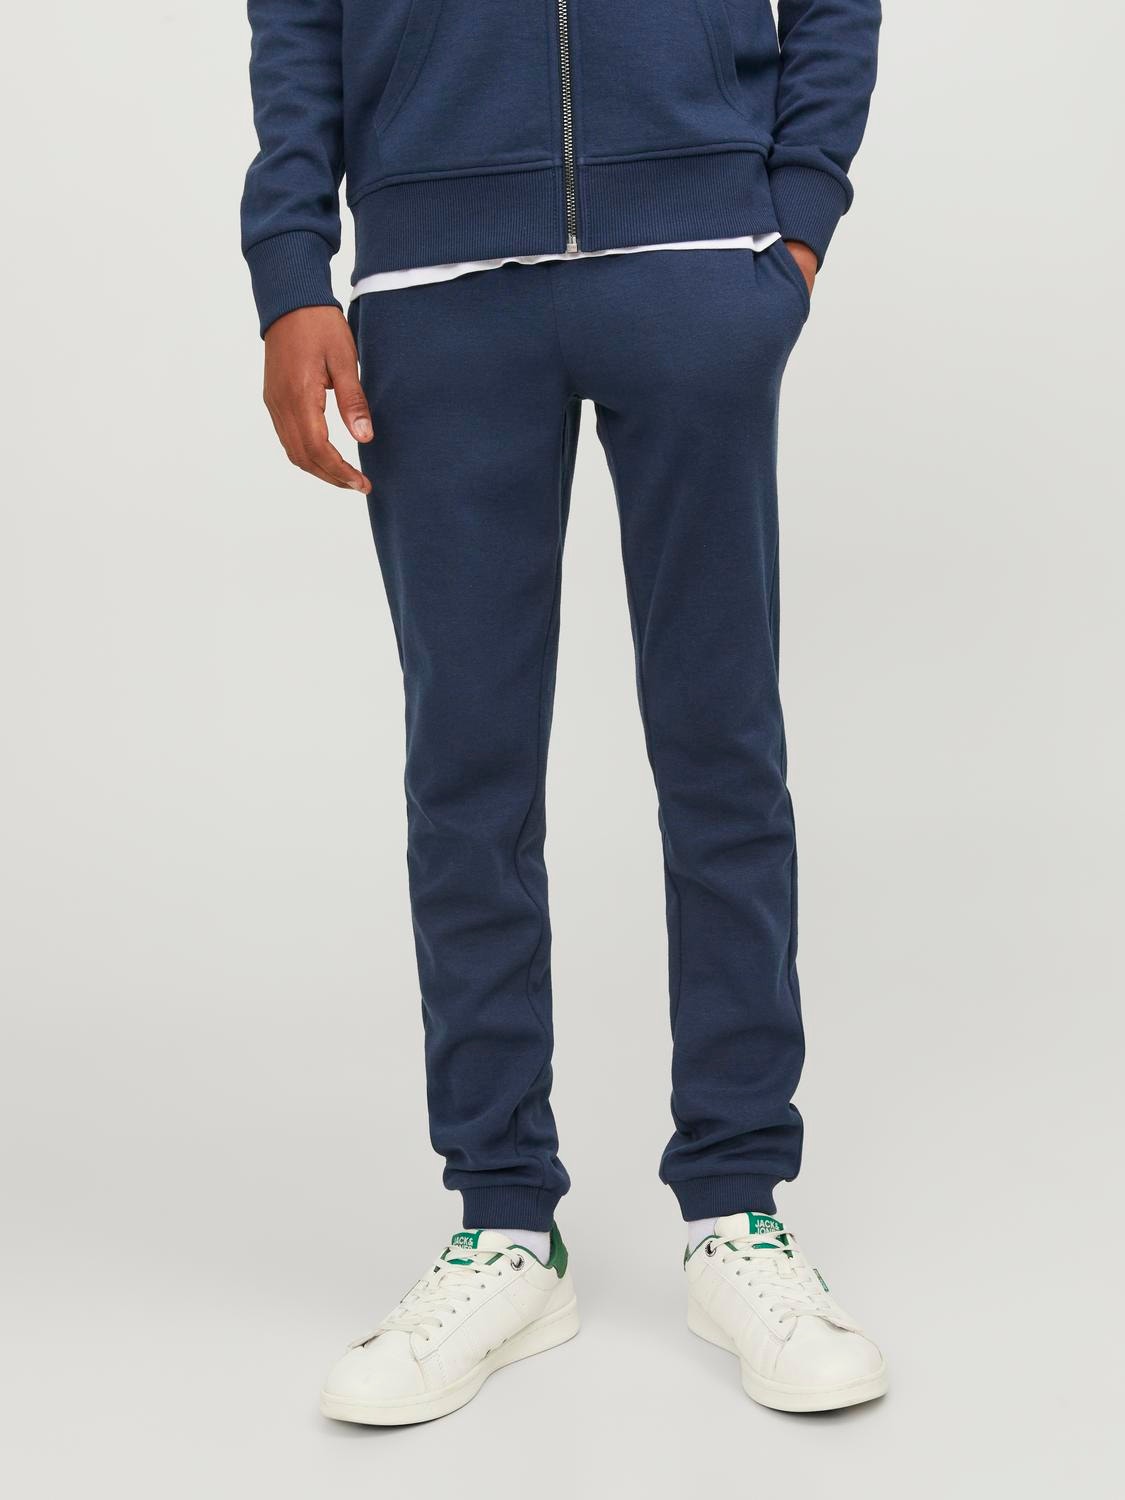 Jack & Jones Sweatpants Junior -Navy Blazer - 12190406